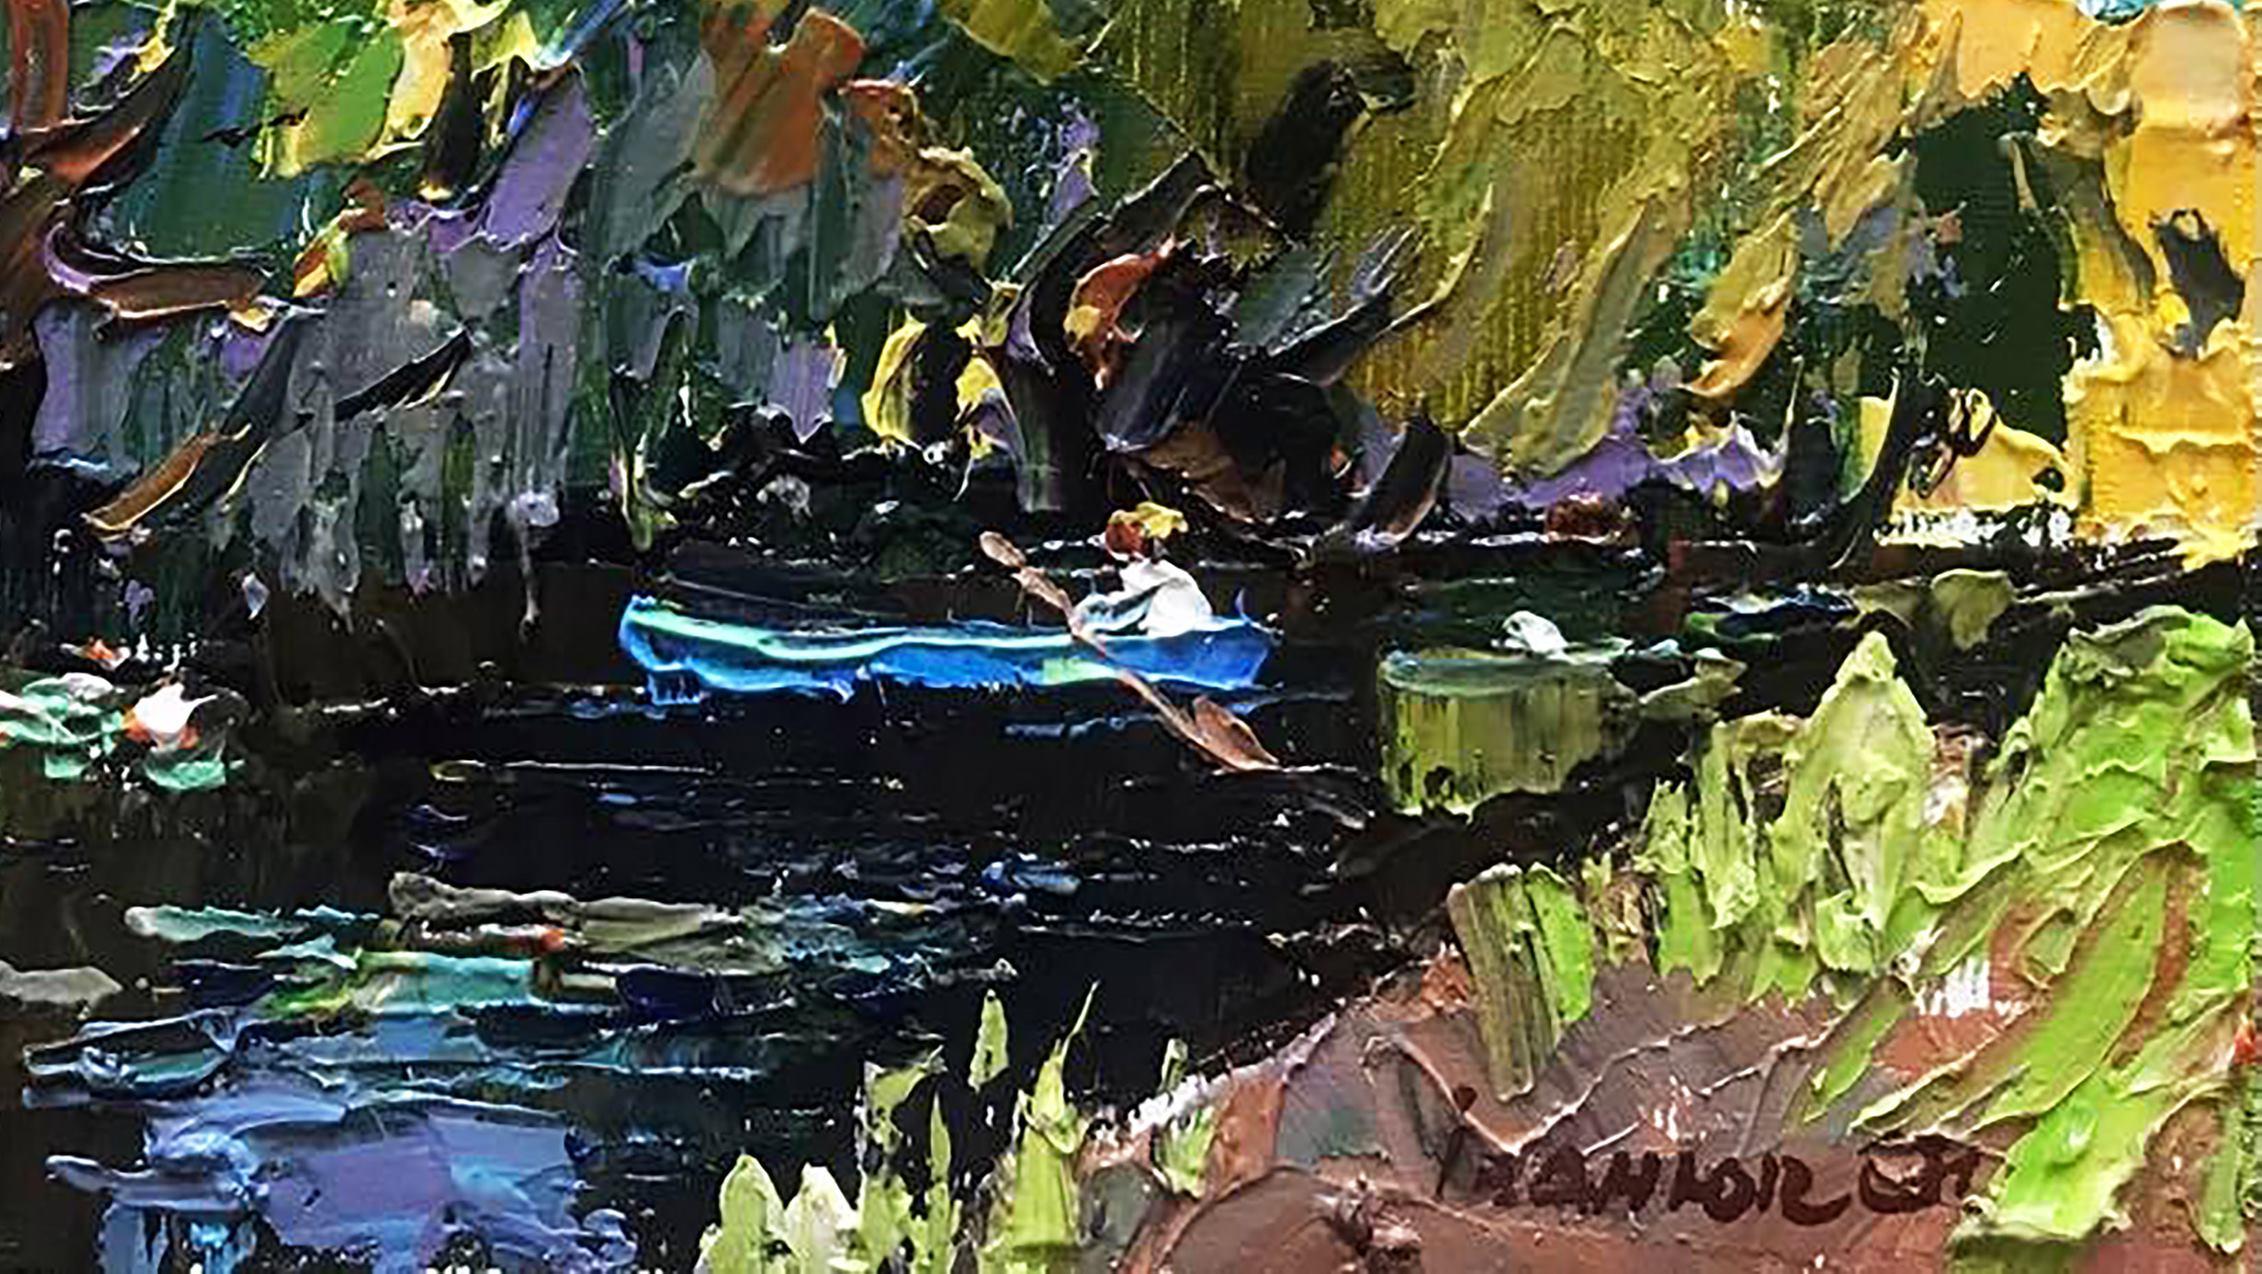 Artistics : Alex Kalenyuk 
Oeuvre : Peinture à l'huile originale, œuvre d'art faite à la main, unique en son genre. 
Médium : Huile sur toile 
Année : 2021
Titre : Soirée chaude au bord de la rivière
Style : 6